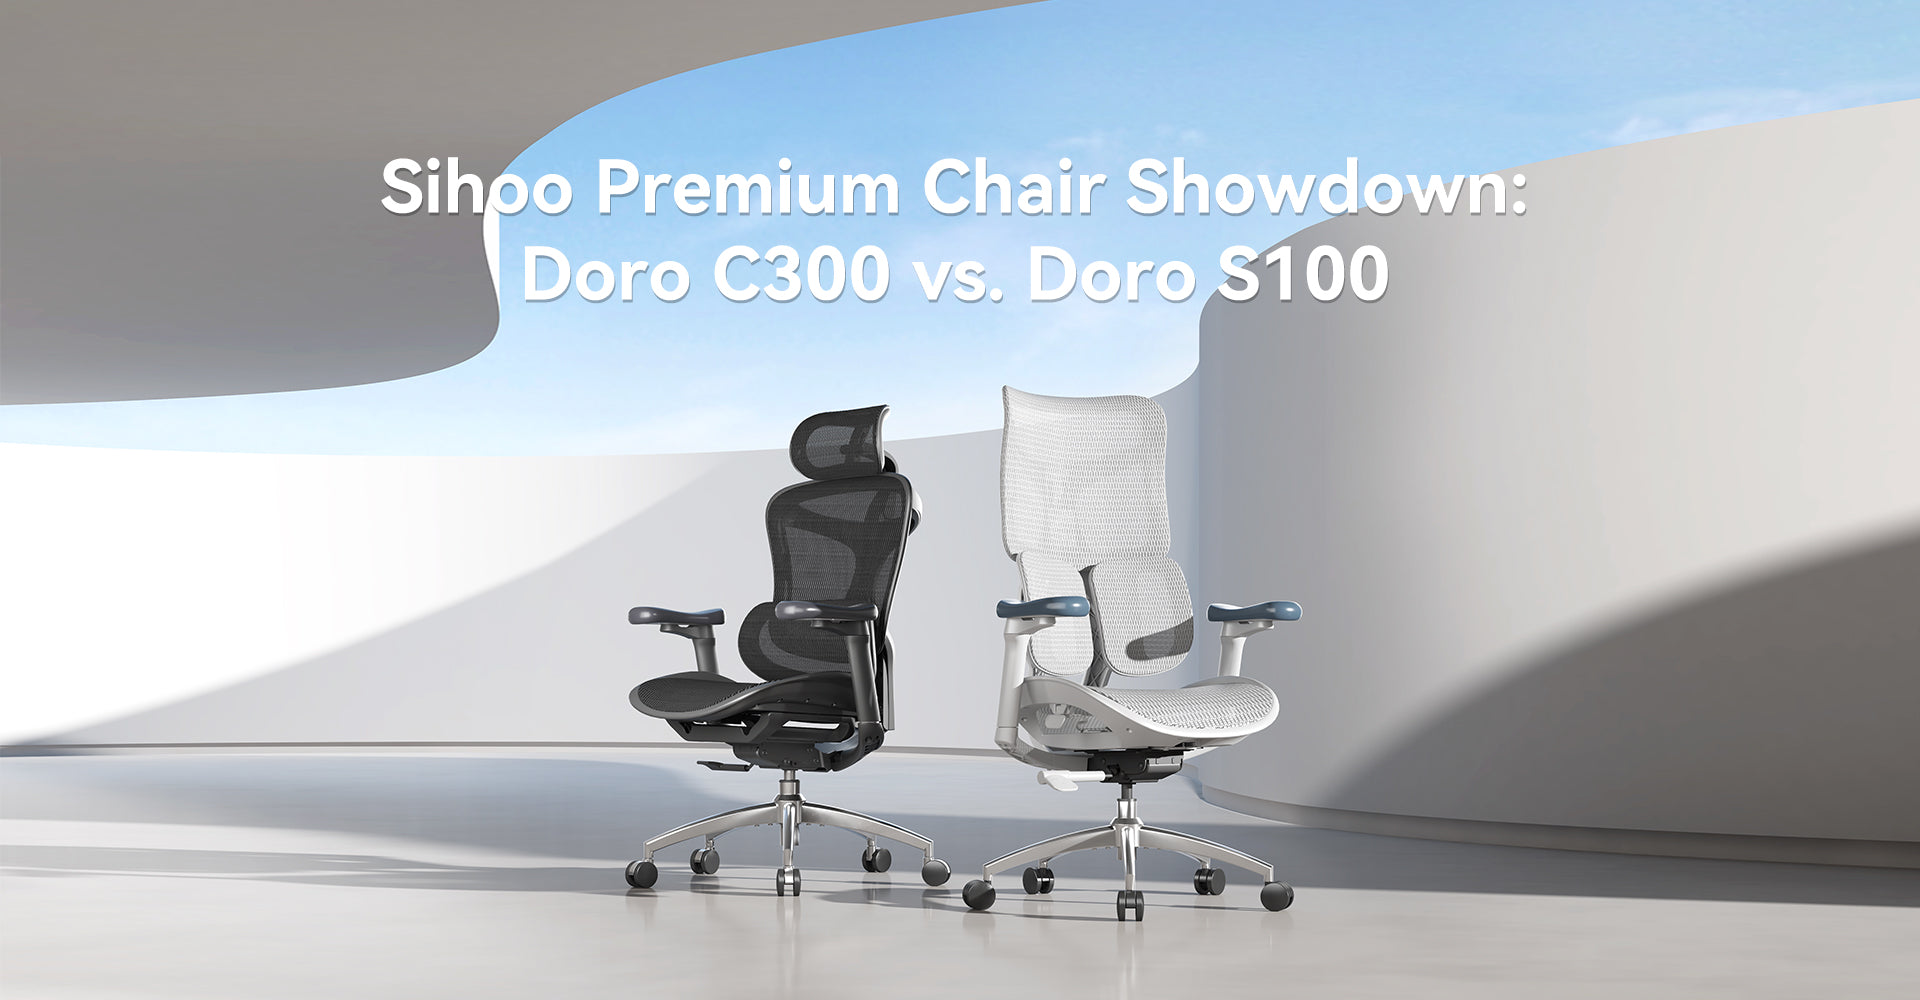 Sihoo Premium Chair Showdown: Doro C300 vs. Doro S100